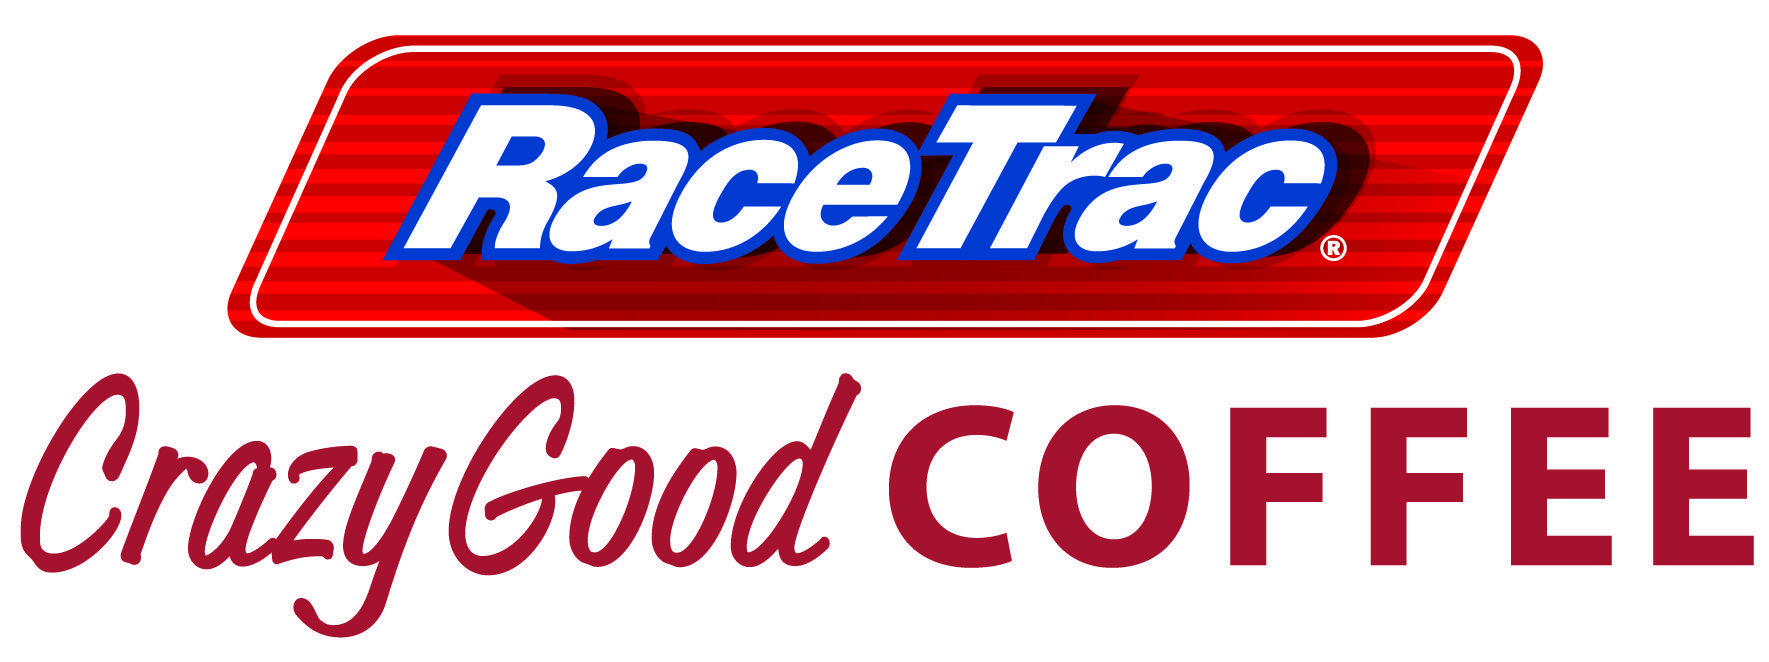 RaceTrac Logo - Racetrac Logos